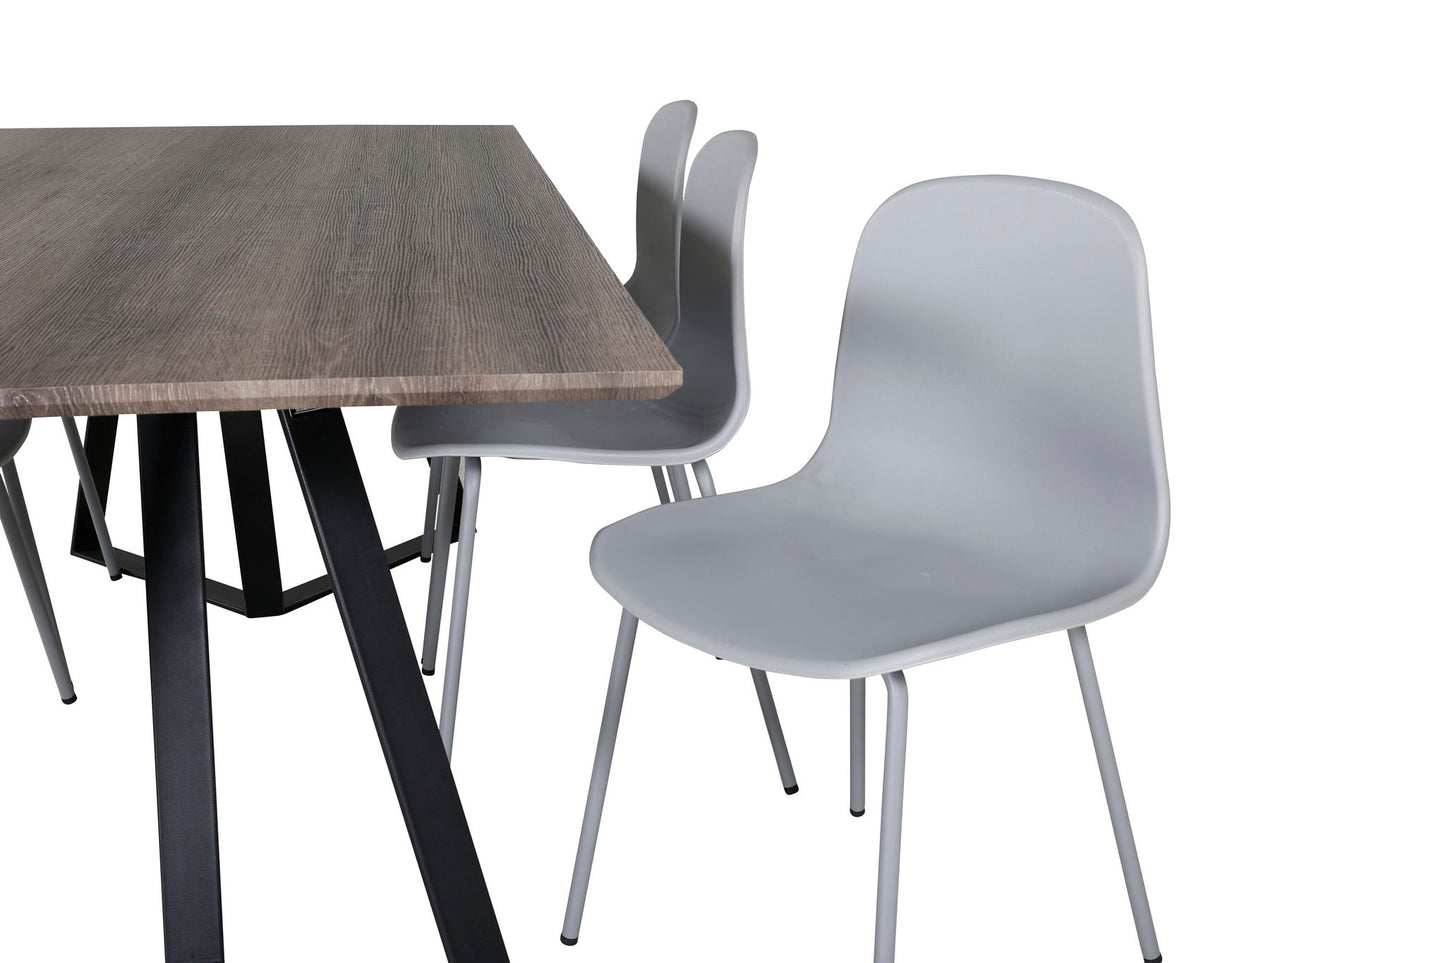 Maria - Spisebord, 180*90*H75 - Grå / Sort+Arctic Spisebordsstol - Grå ben - Grå Plast